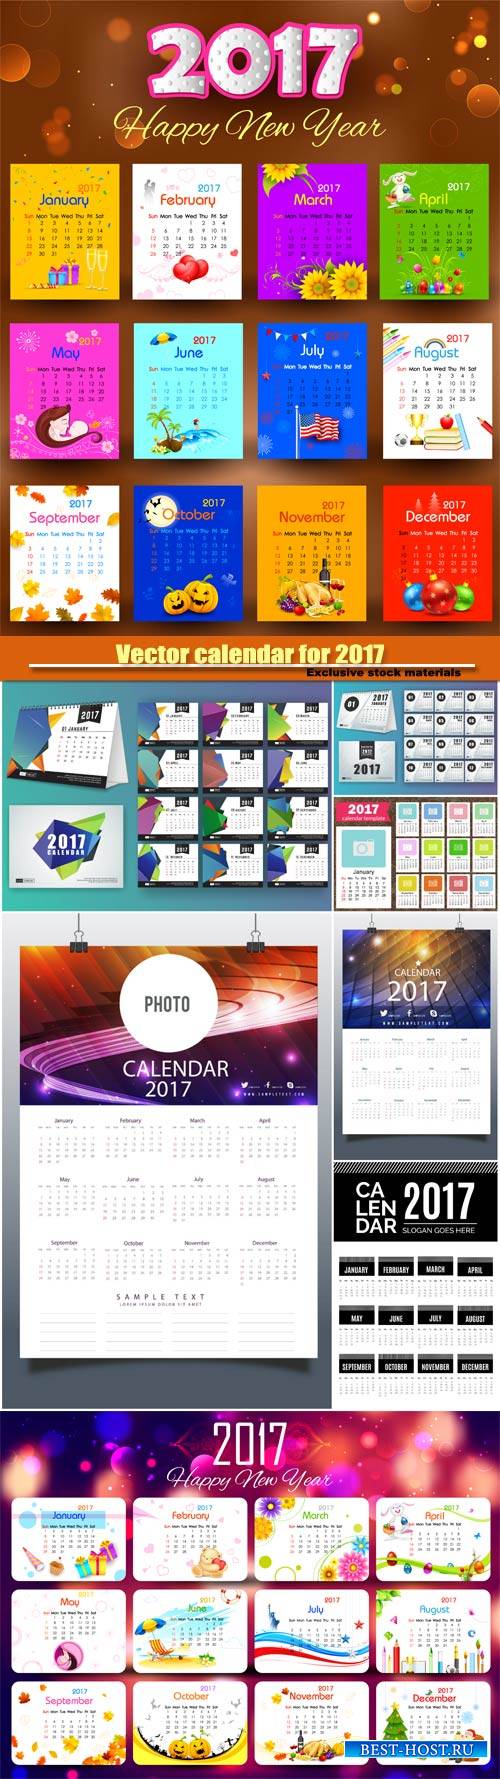 Vector calendar for 2017